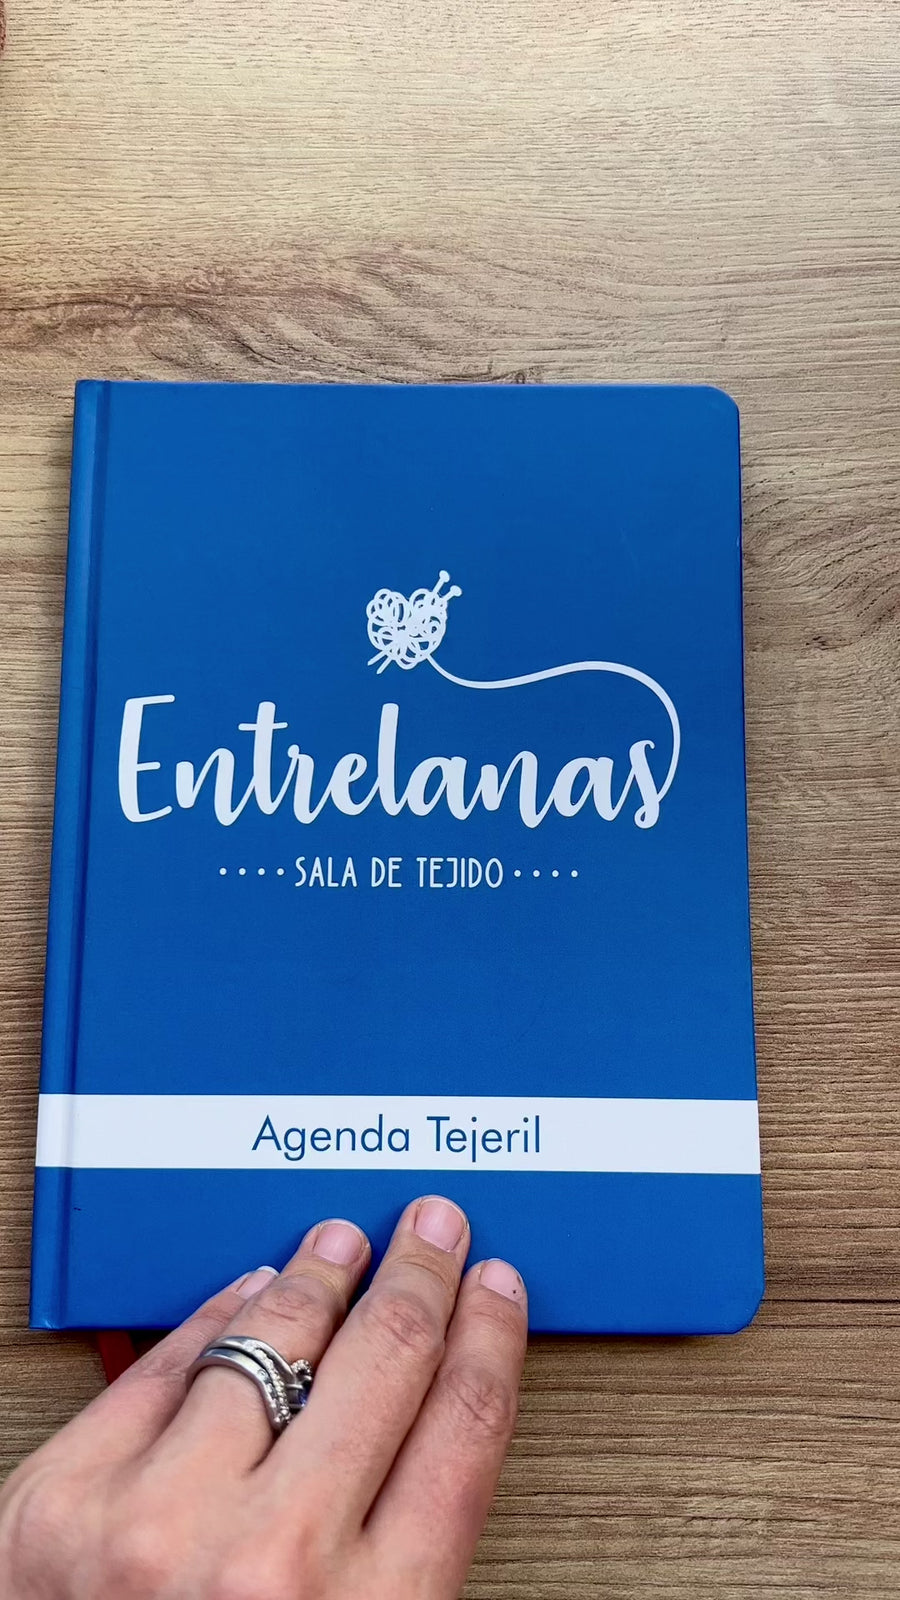 Agenda Tejeril Entrelanas - Para diseñar, apuntar y acordarte de tus proyectos de tejido